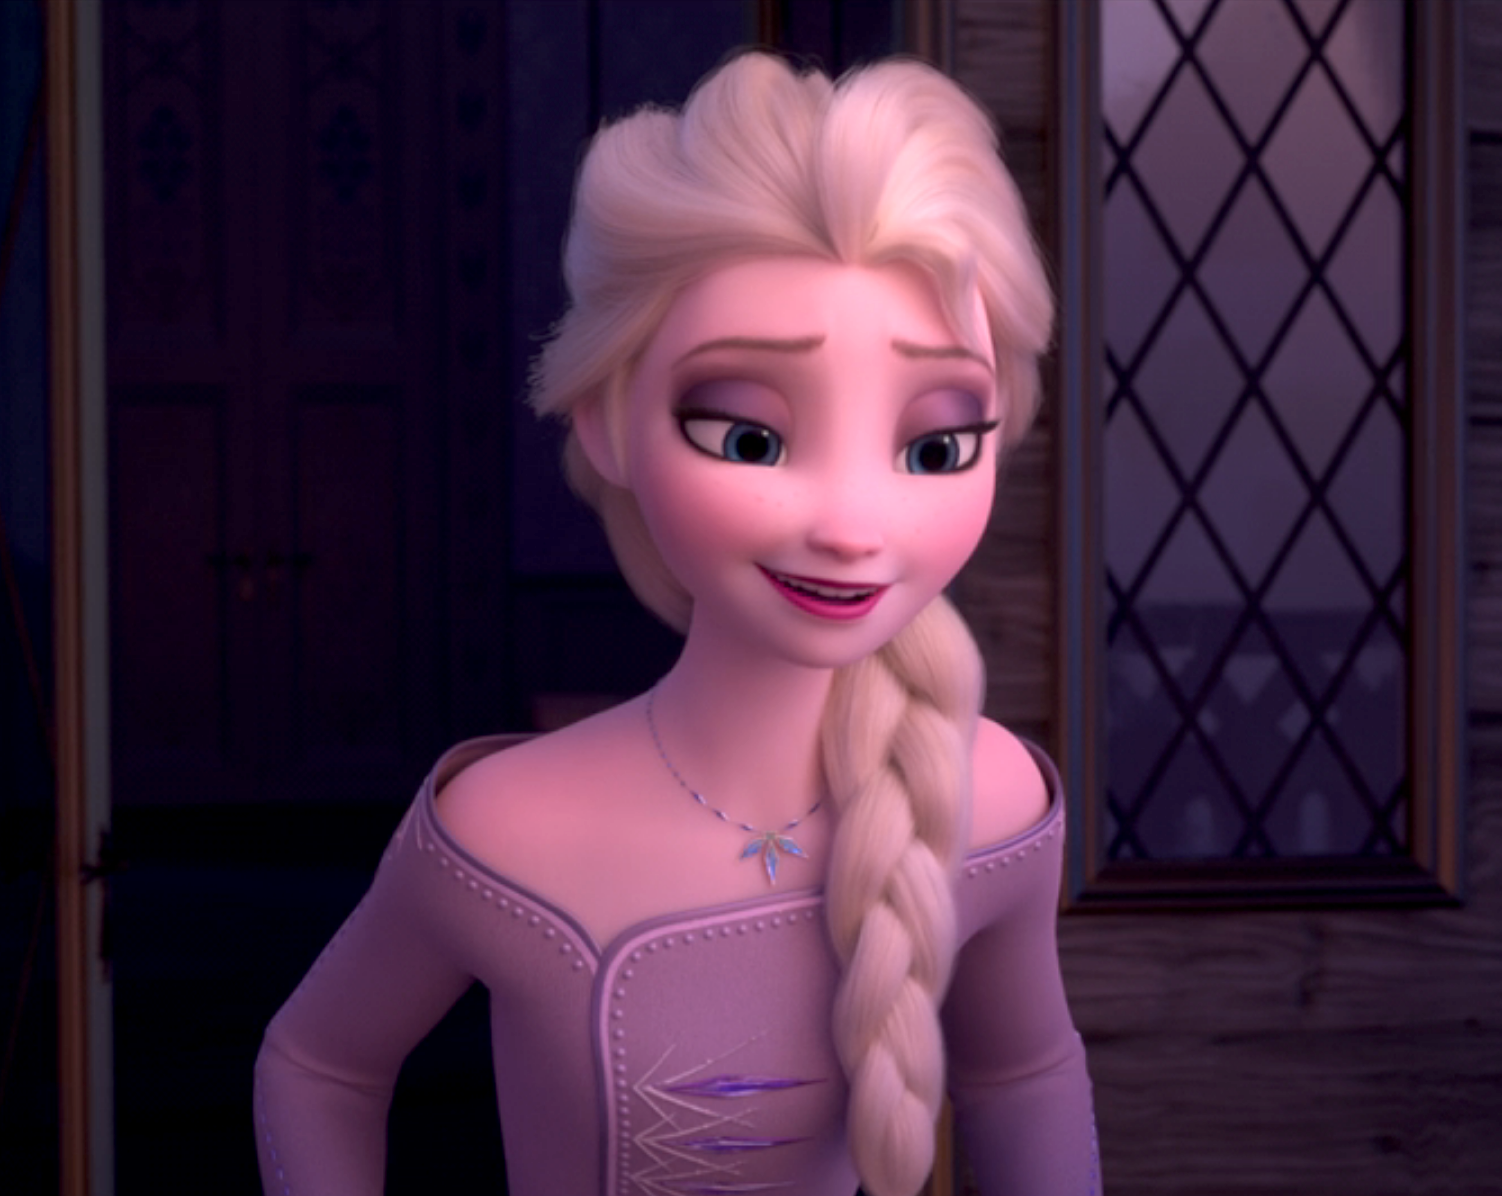 Closeup of Elsa